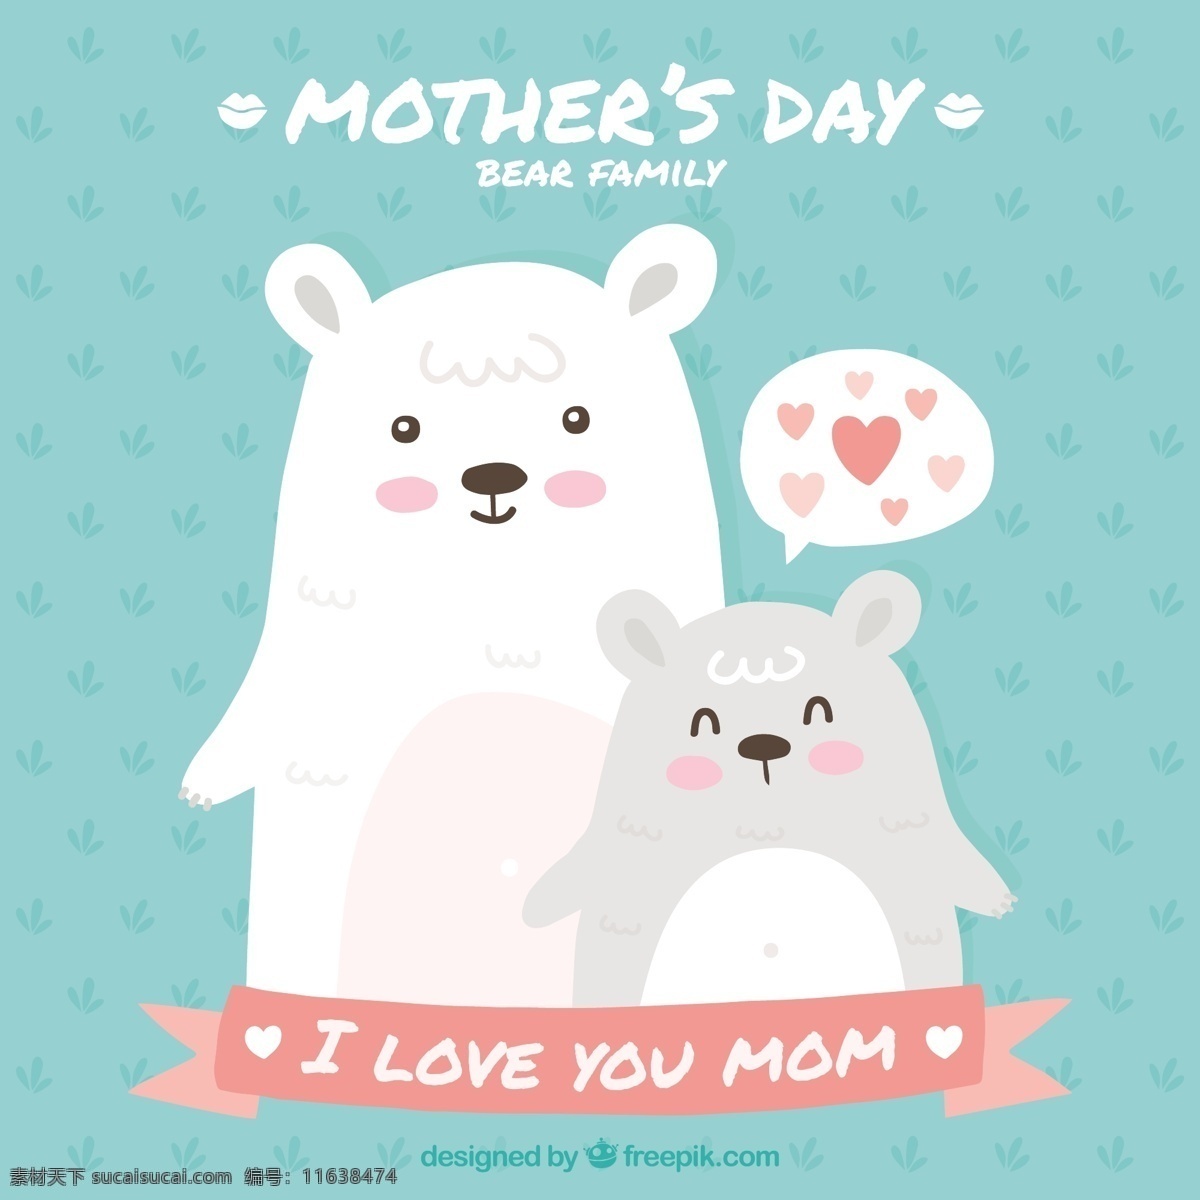 熊妈妈节贺卡 贺卡 爱情 家庭 母亲节 动物 可爱 庆祝 熊 母亲 妈妈 可爱的动物 父母 天 问候 关系 妇女节